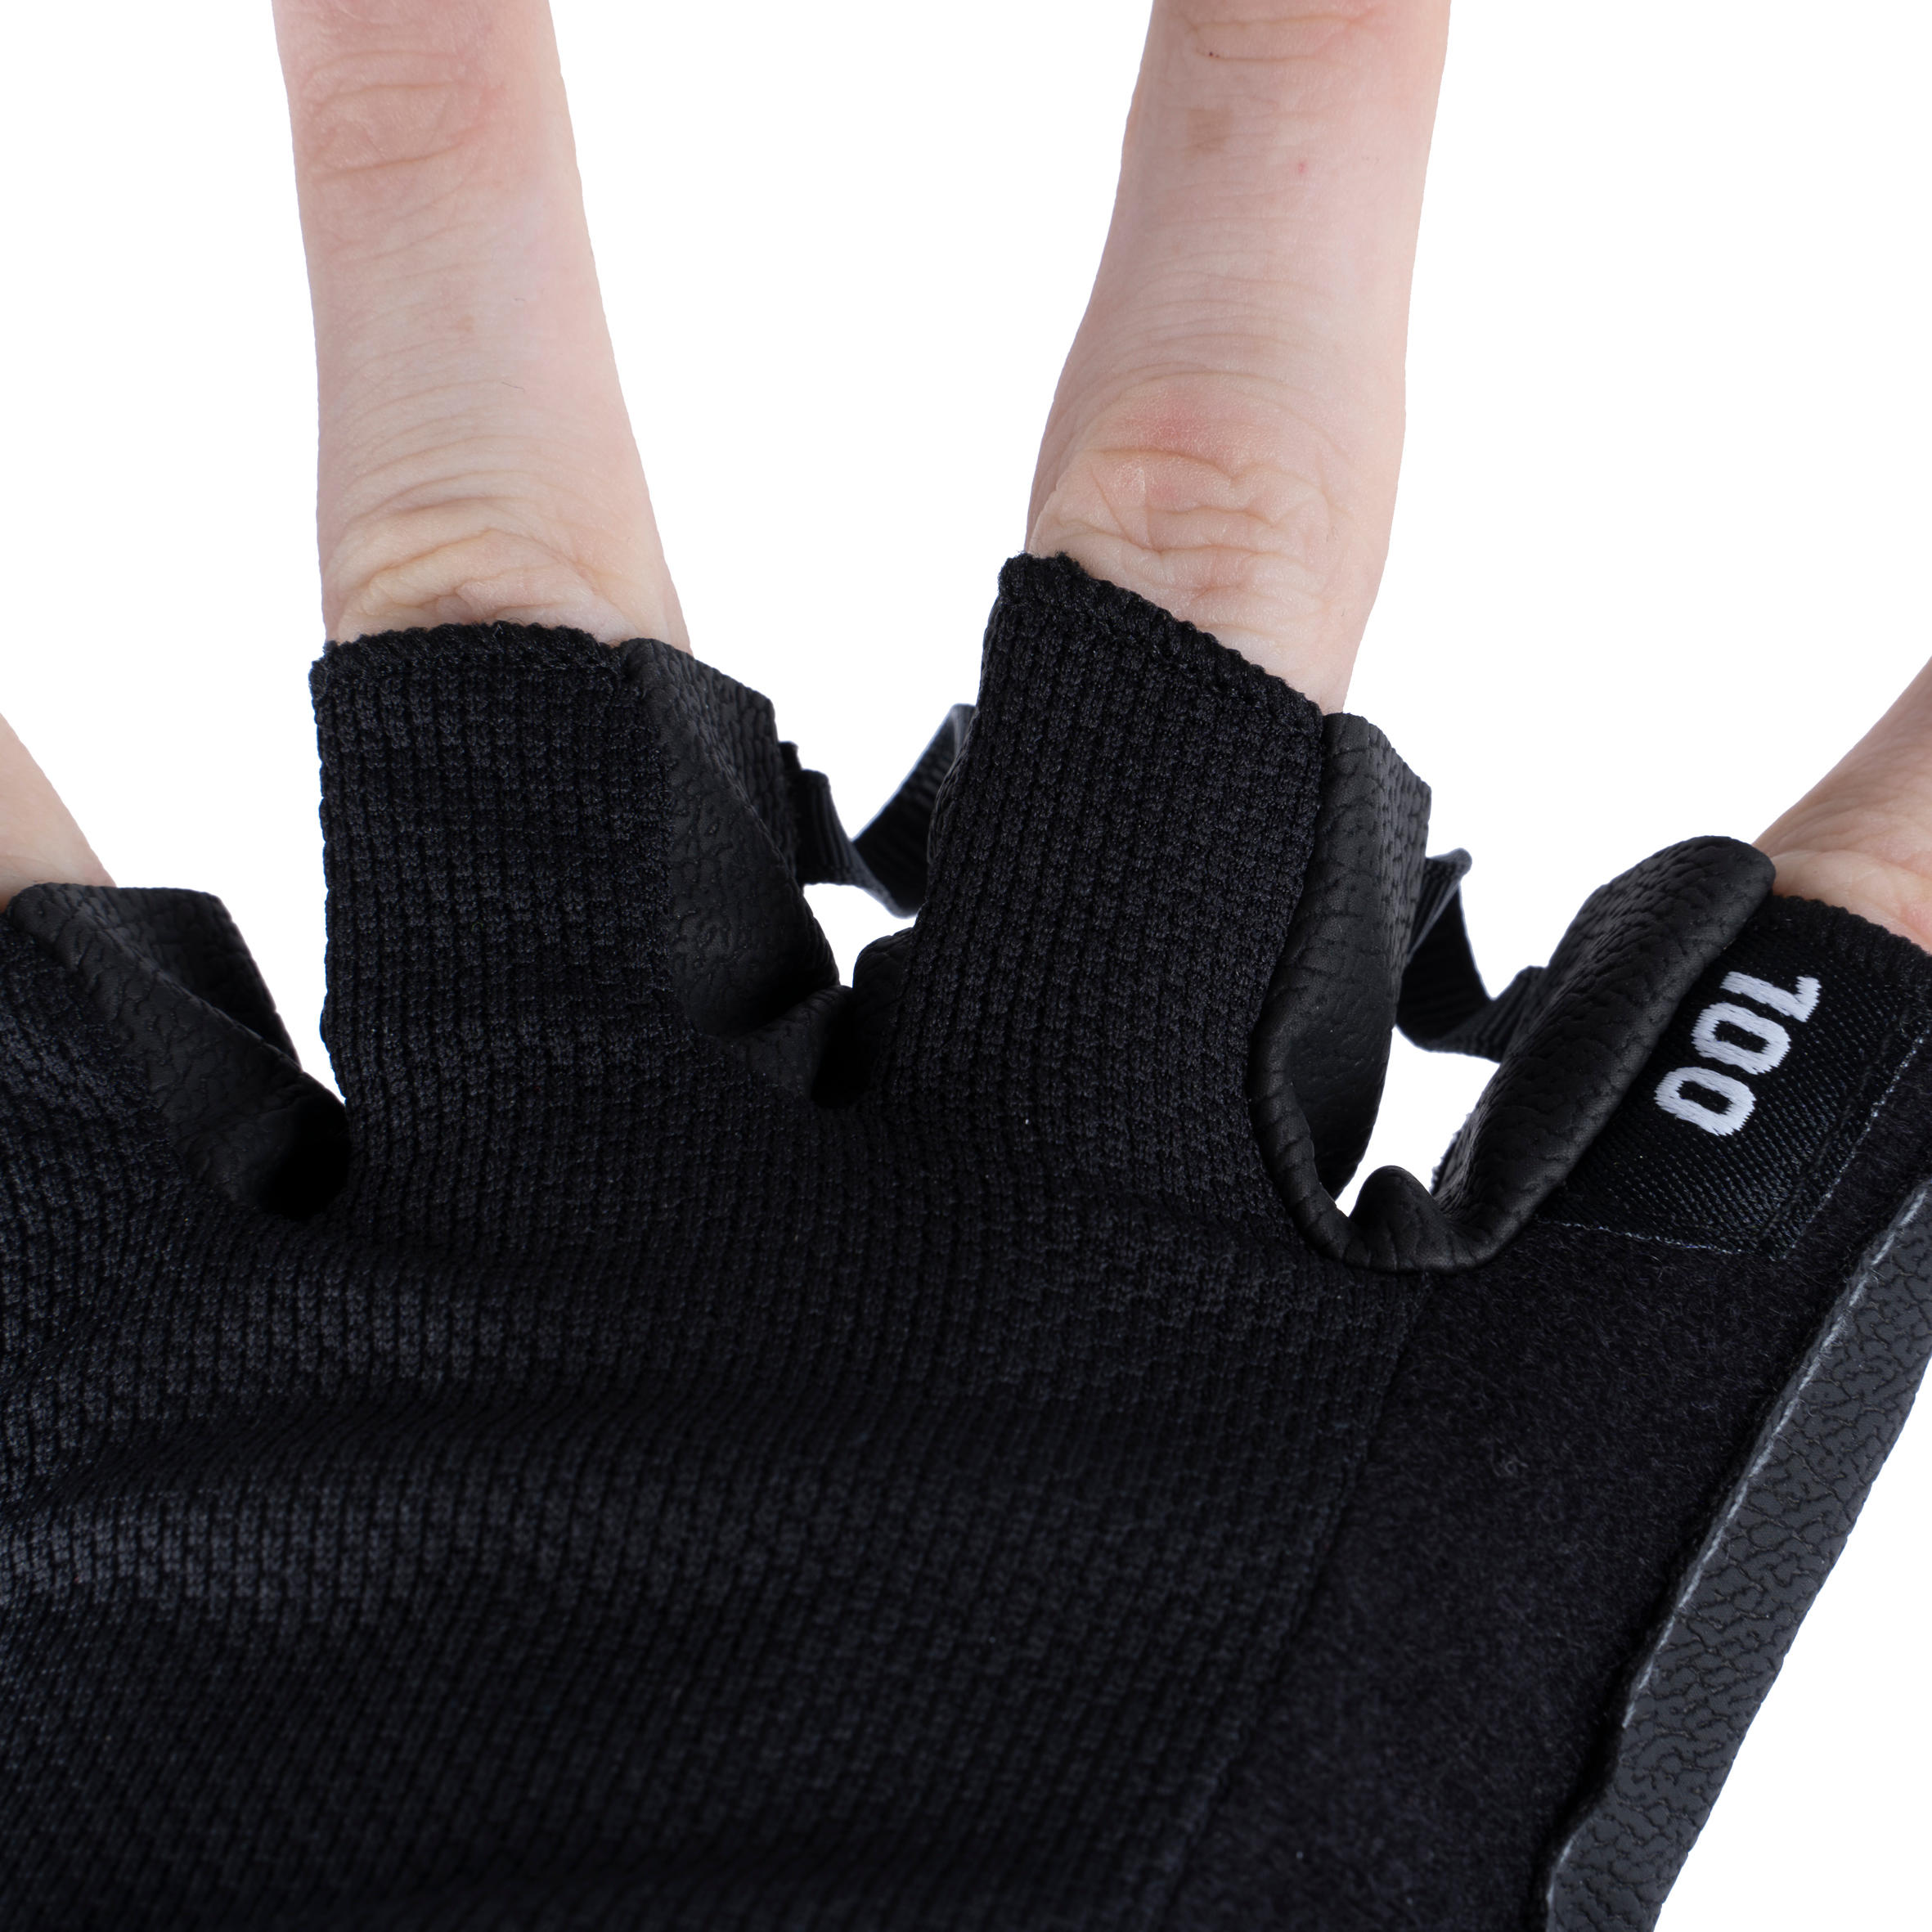 100 Weight Training Gloves - Black/Grey 2/8